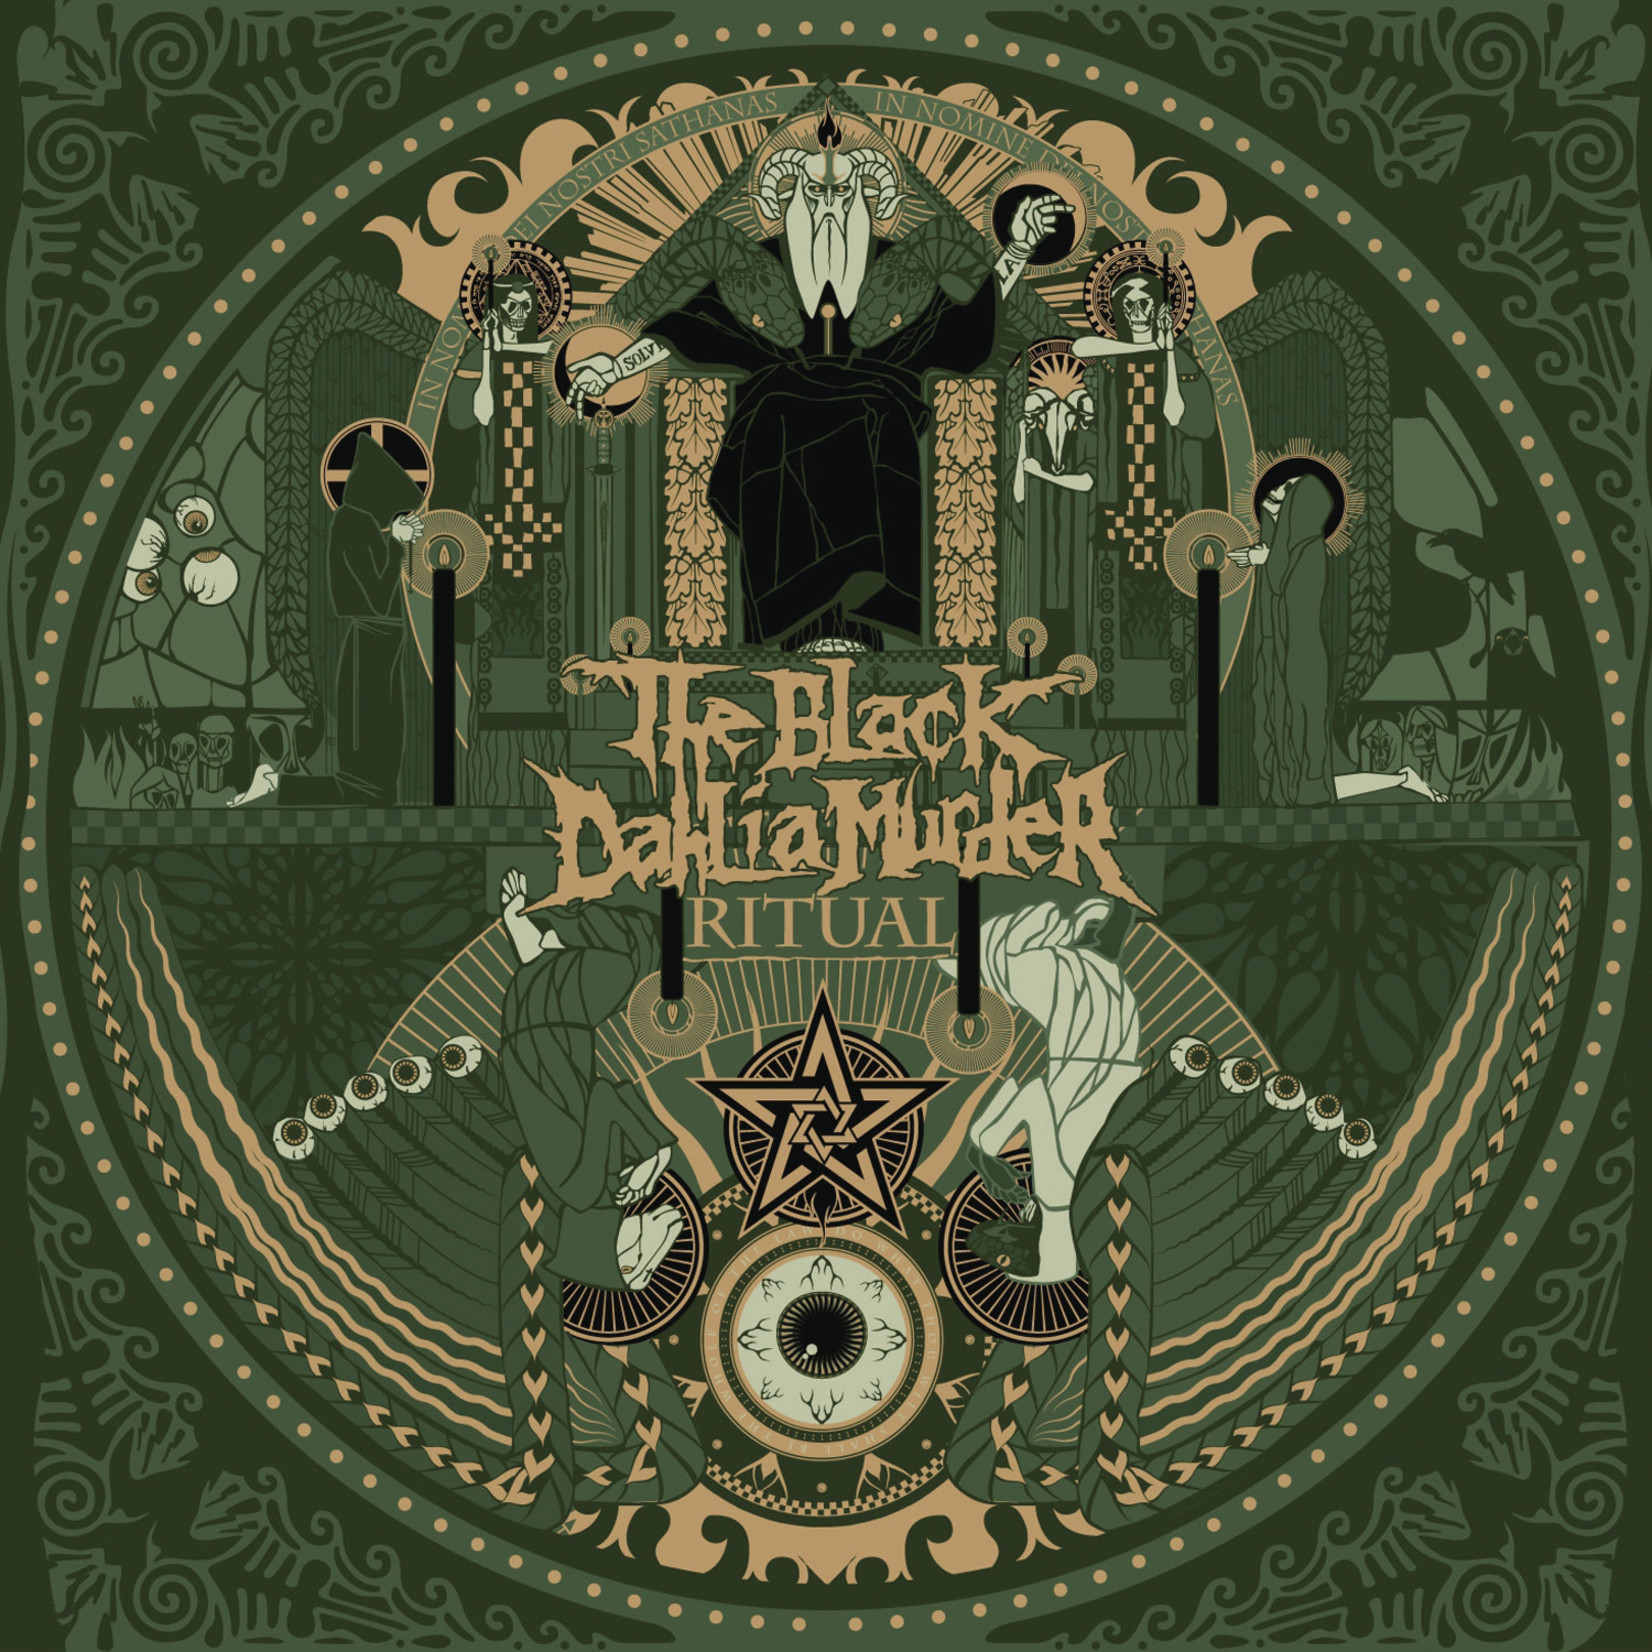 Black Dahlia Murder - Ritual [CD]